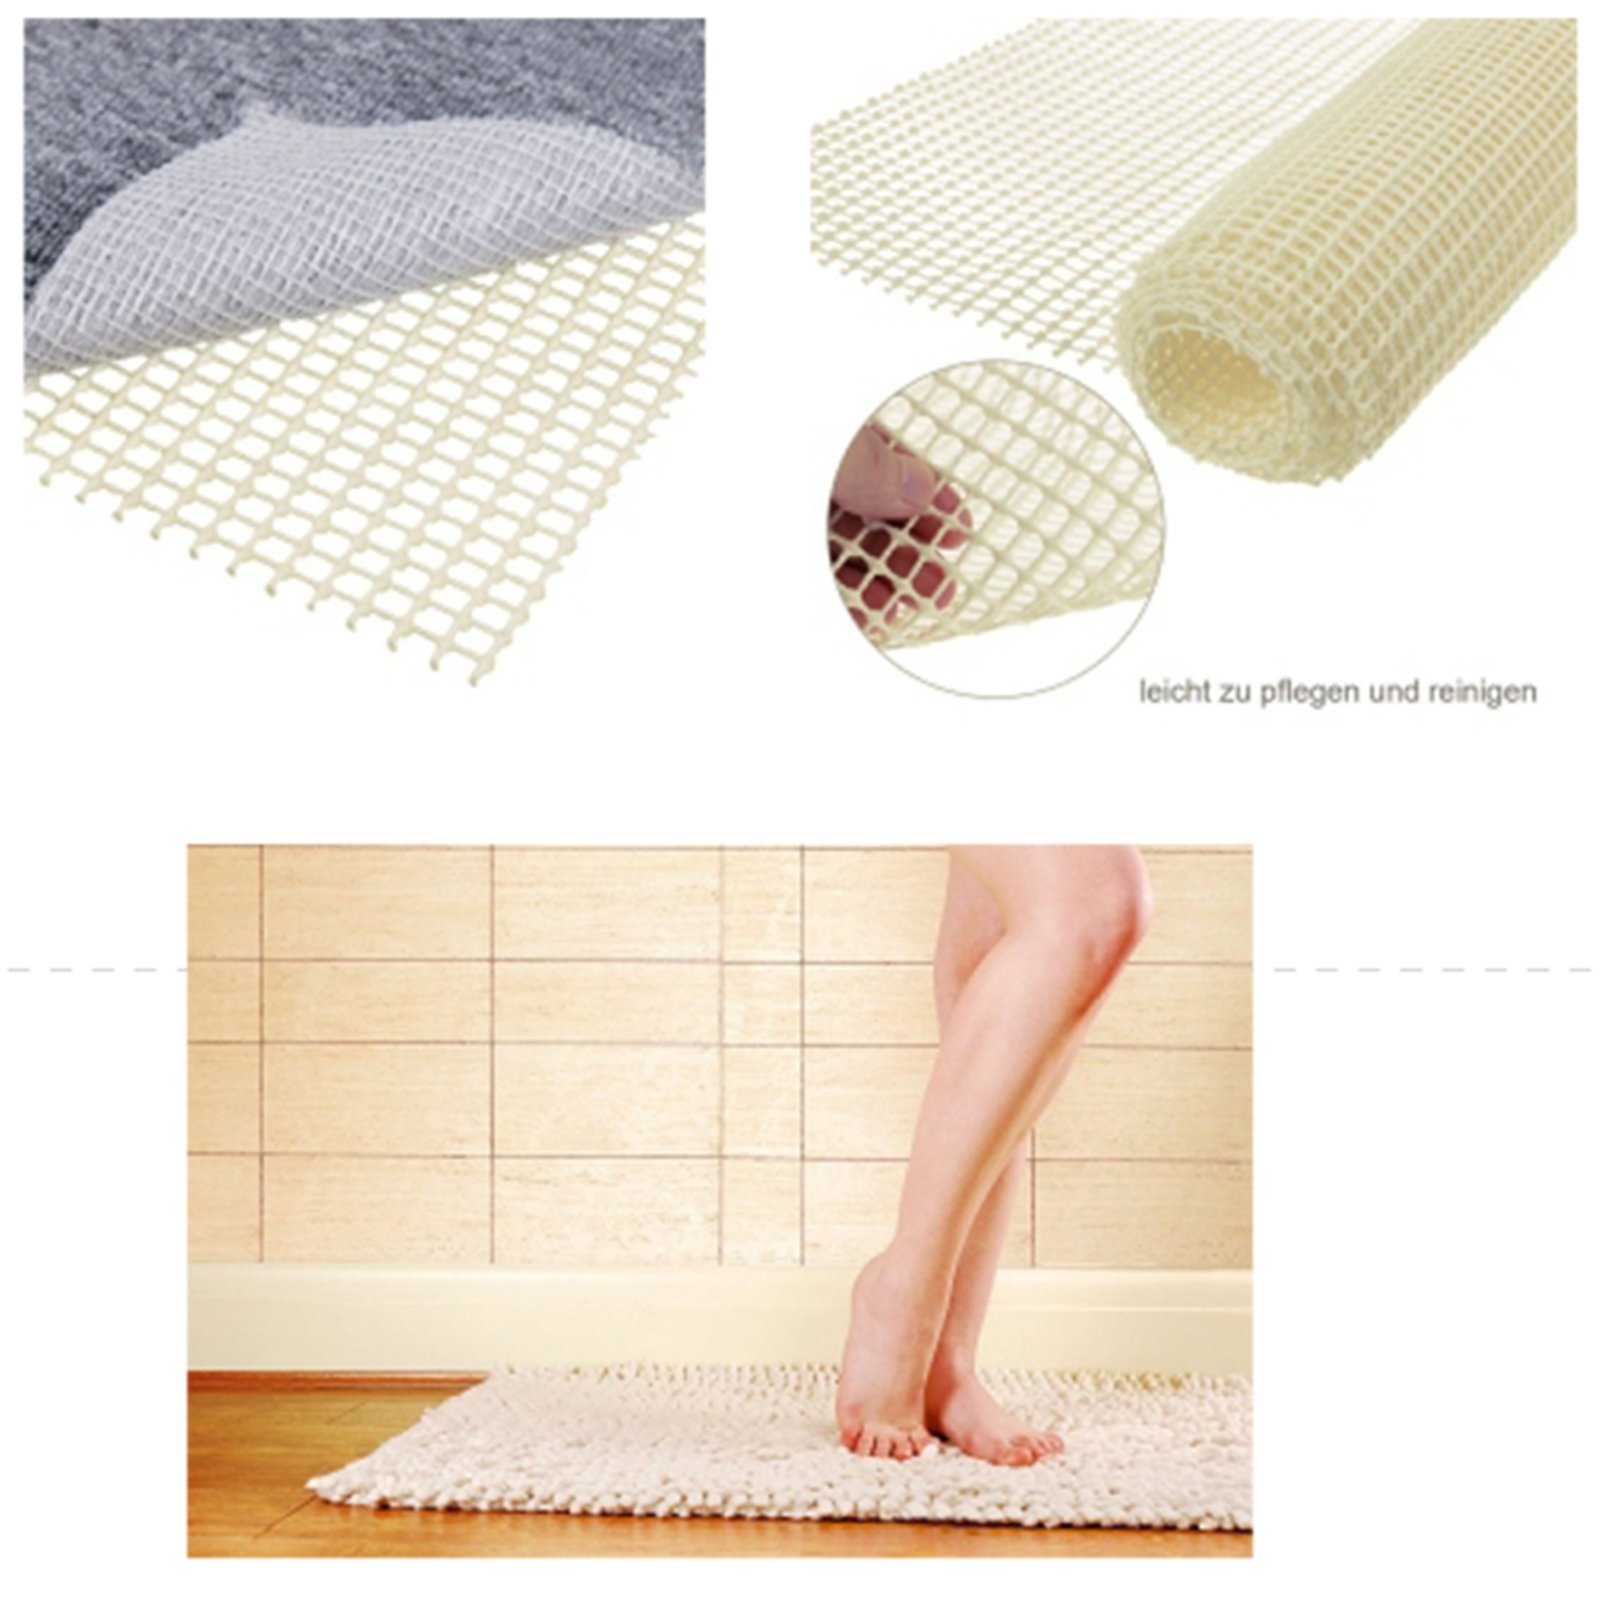 Teppich Antirutsch  Teppich Unterlage & Antirutsch Teppich – antirutsch -teppich